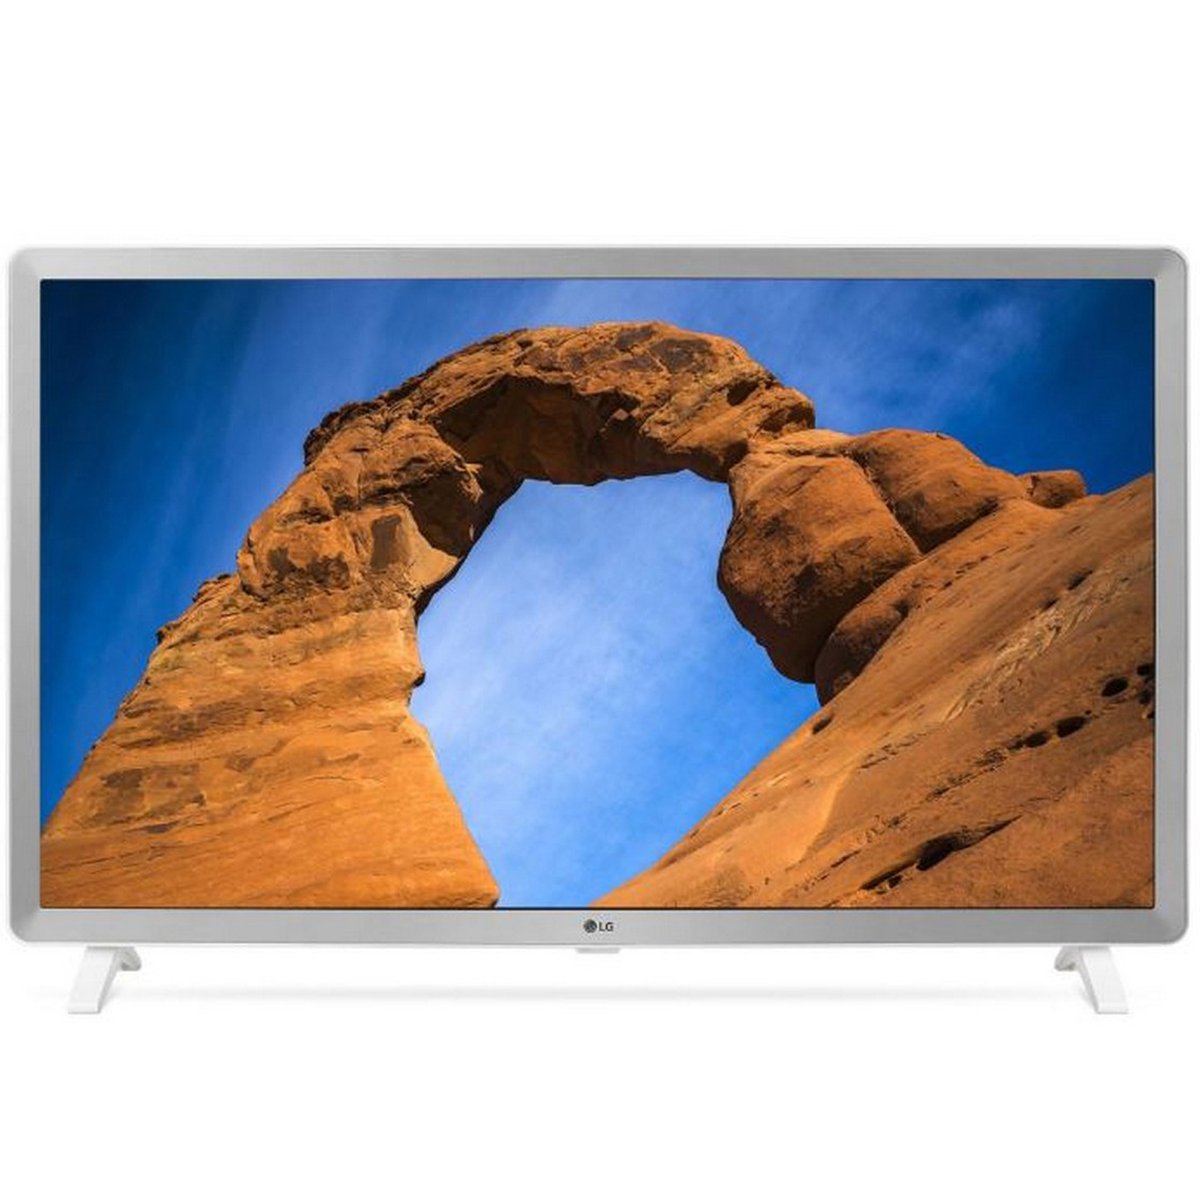 LG Full HD Smart LED TV 32LK610BPVA 32inch